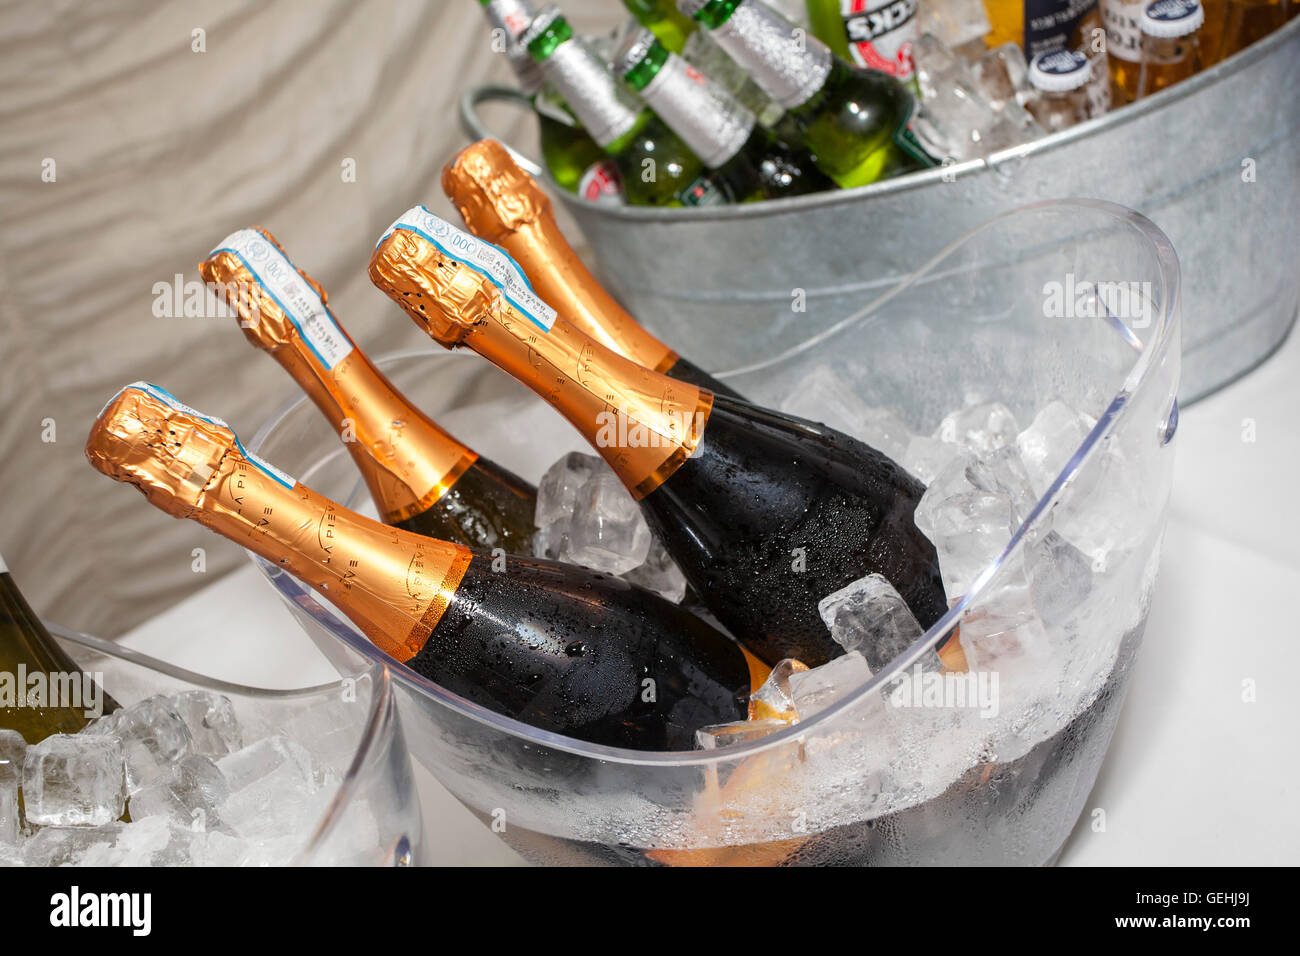 Sof bouteille Verre, bière, vin et champagne dans de grands seaux à glace lors d'une fête. Banque D'Images